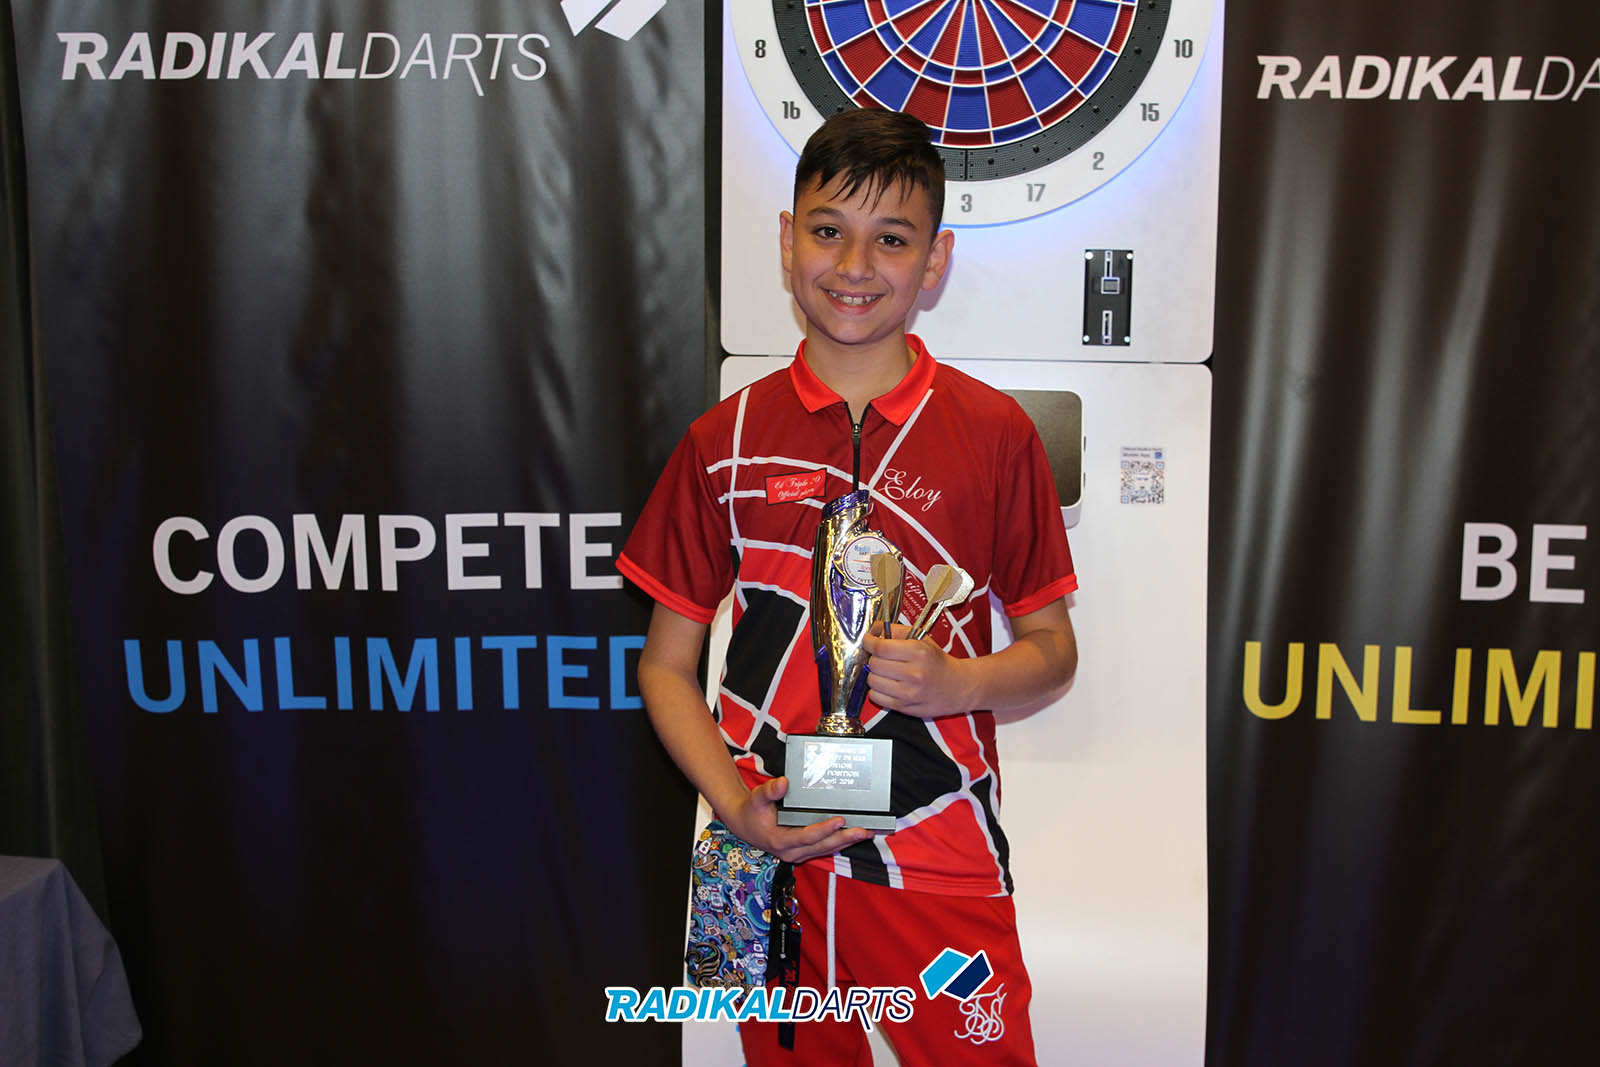 Individual Junior Campeón Eloy. Internacional RadikalDarts 2019